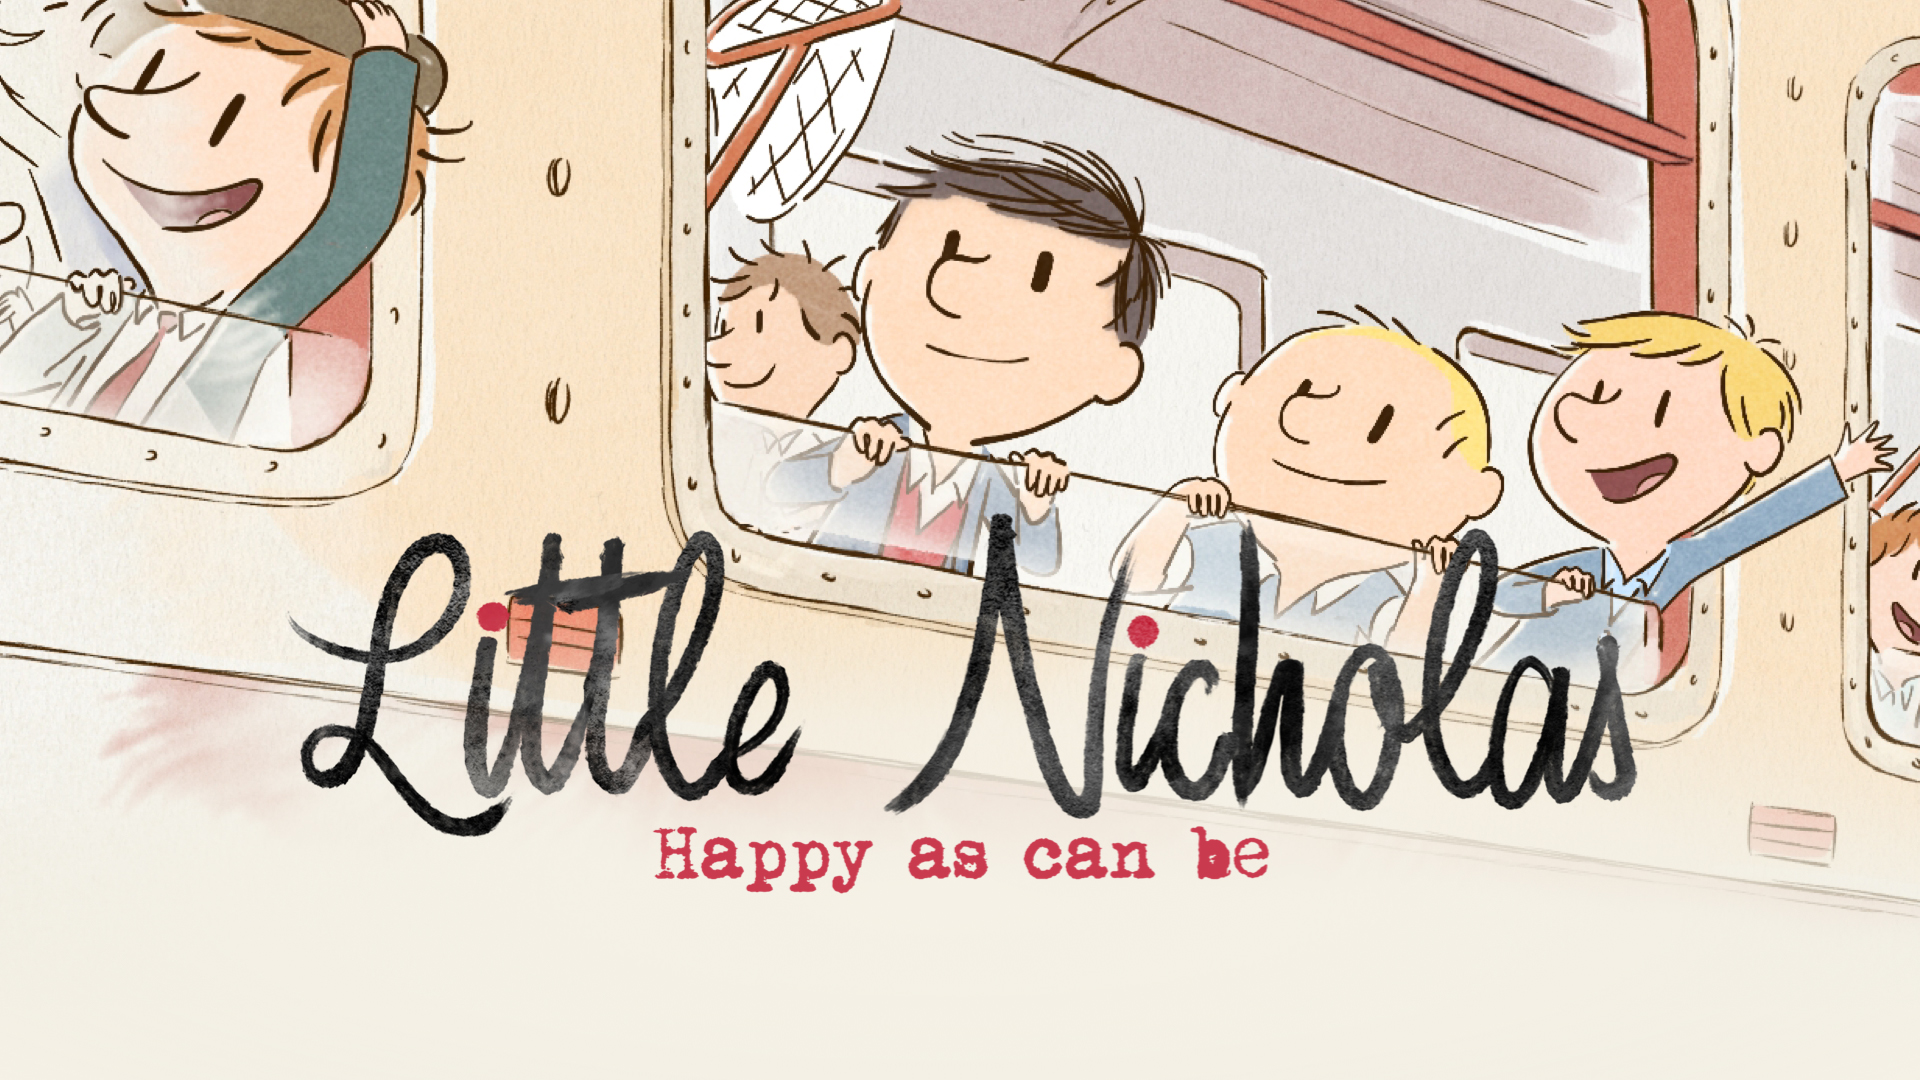 Little Nicholas